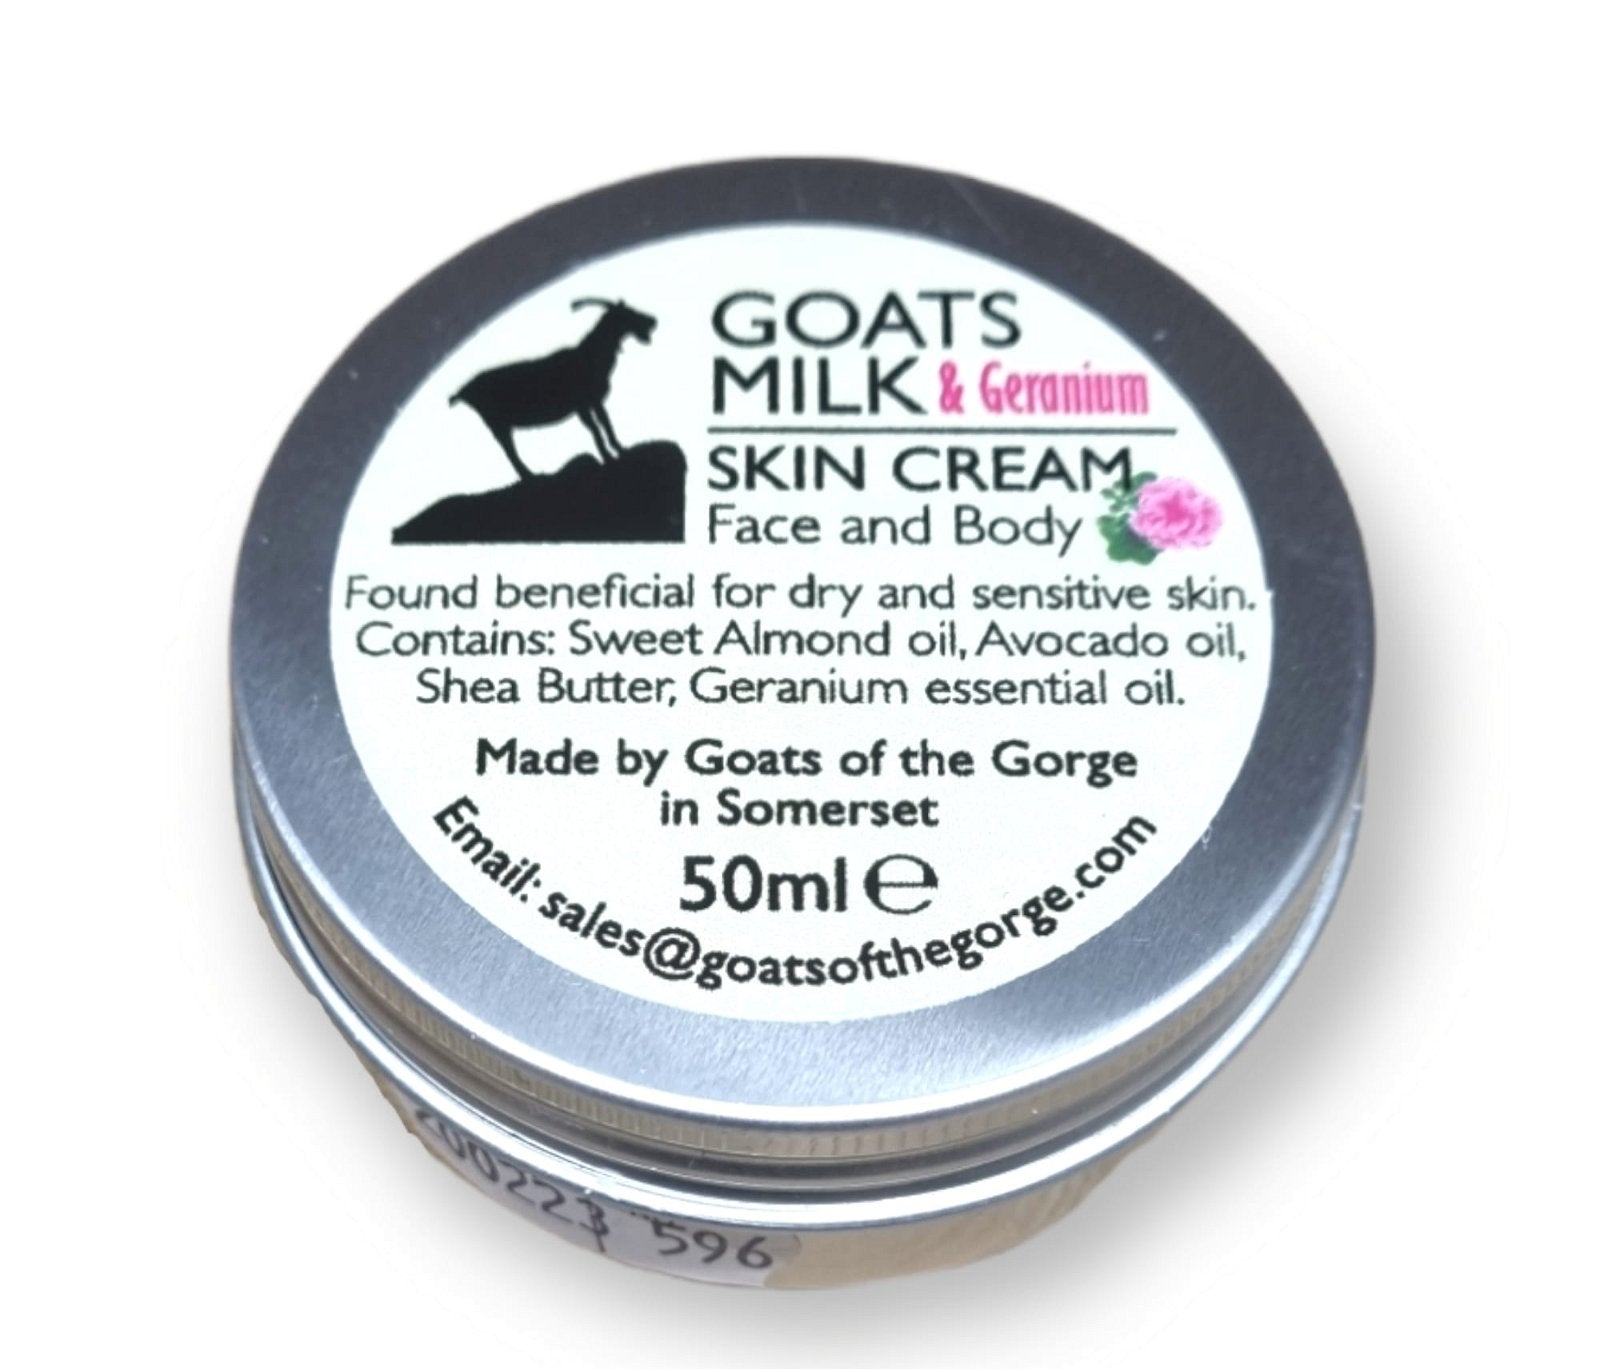 Goats Milk Geranium Skin Cream 50ml - Kaftan direct